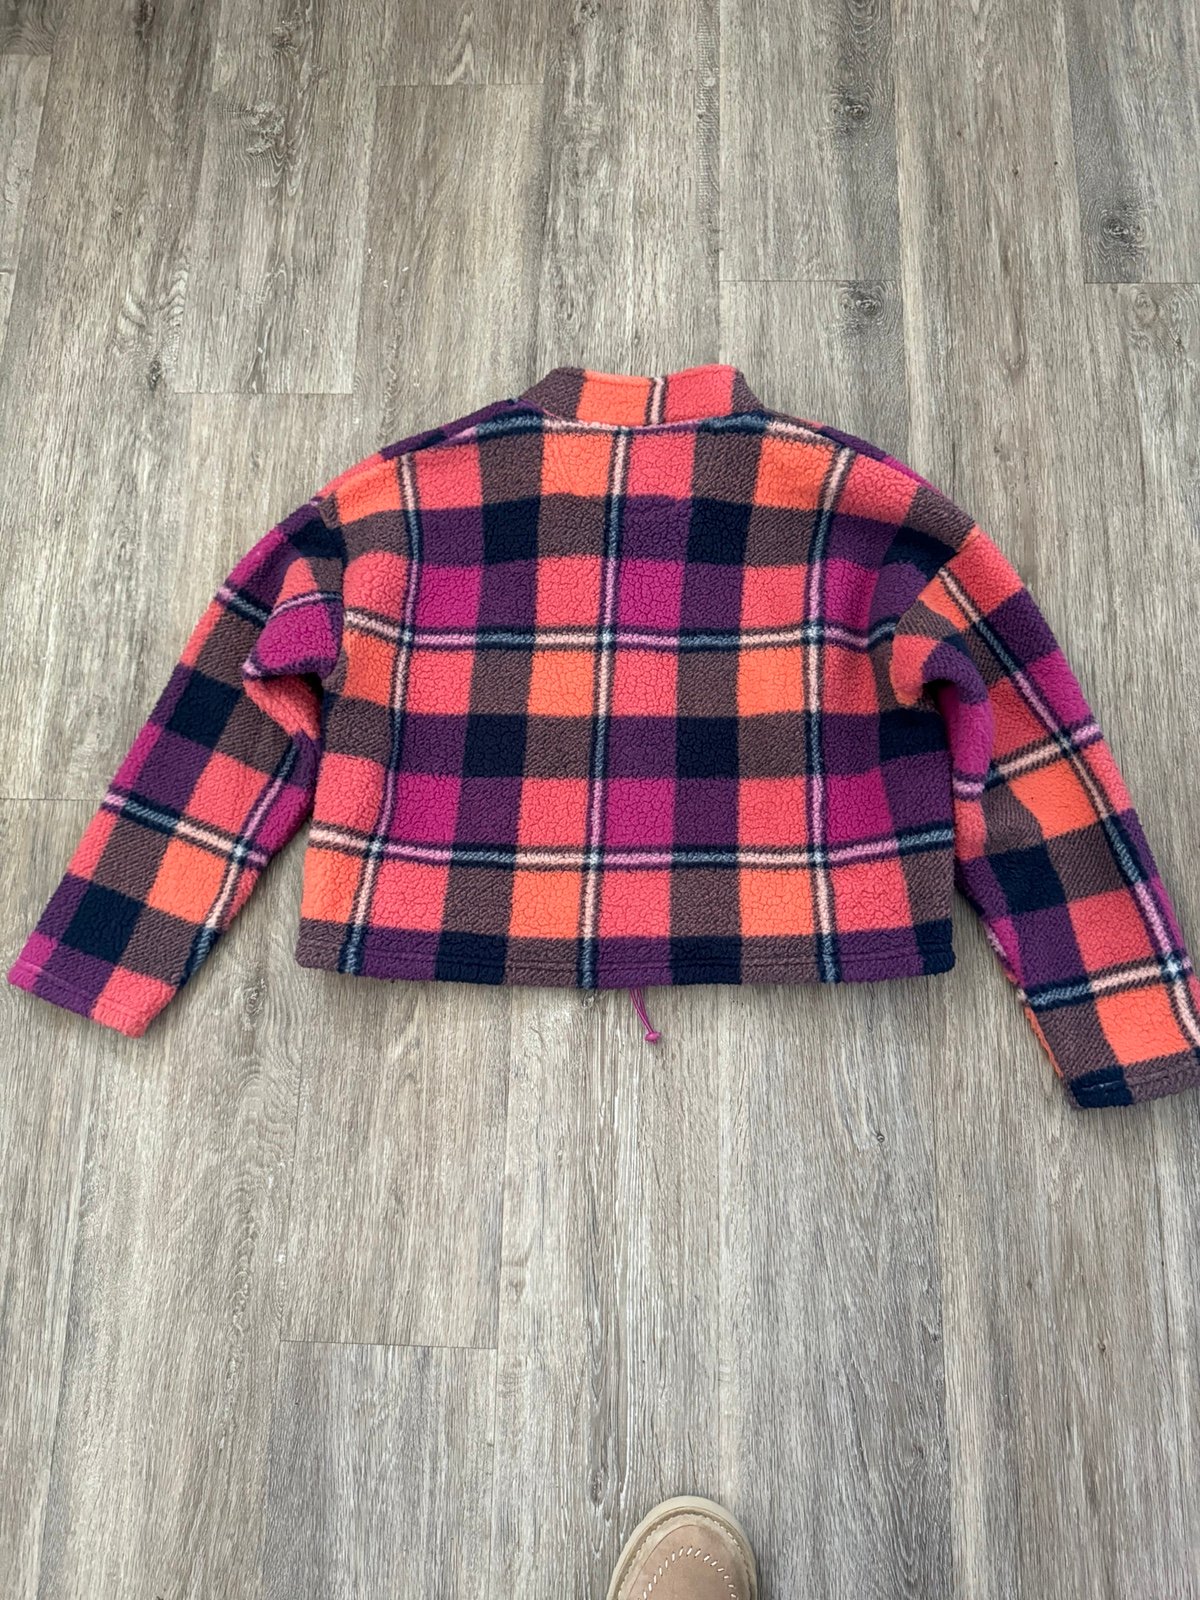 American Eagle 1/4 zip pullover jacket size medium GfldgduDV